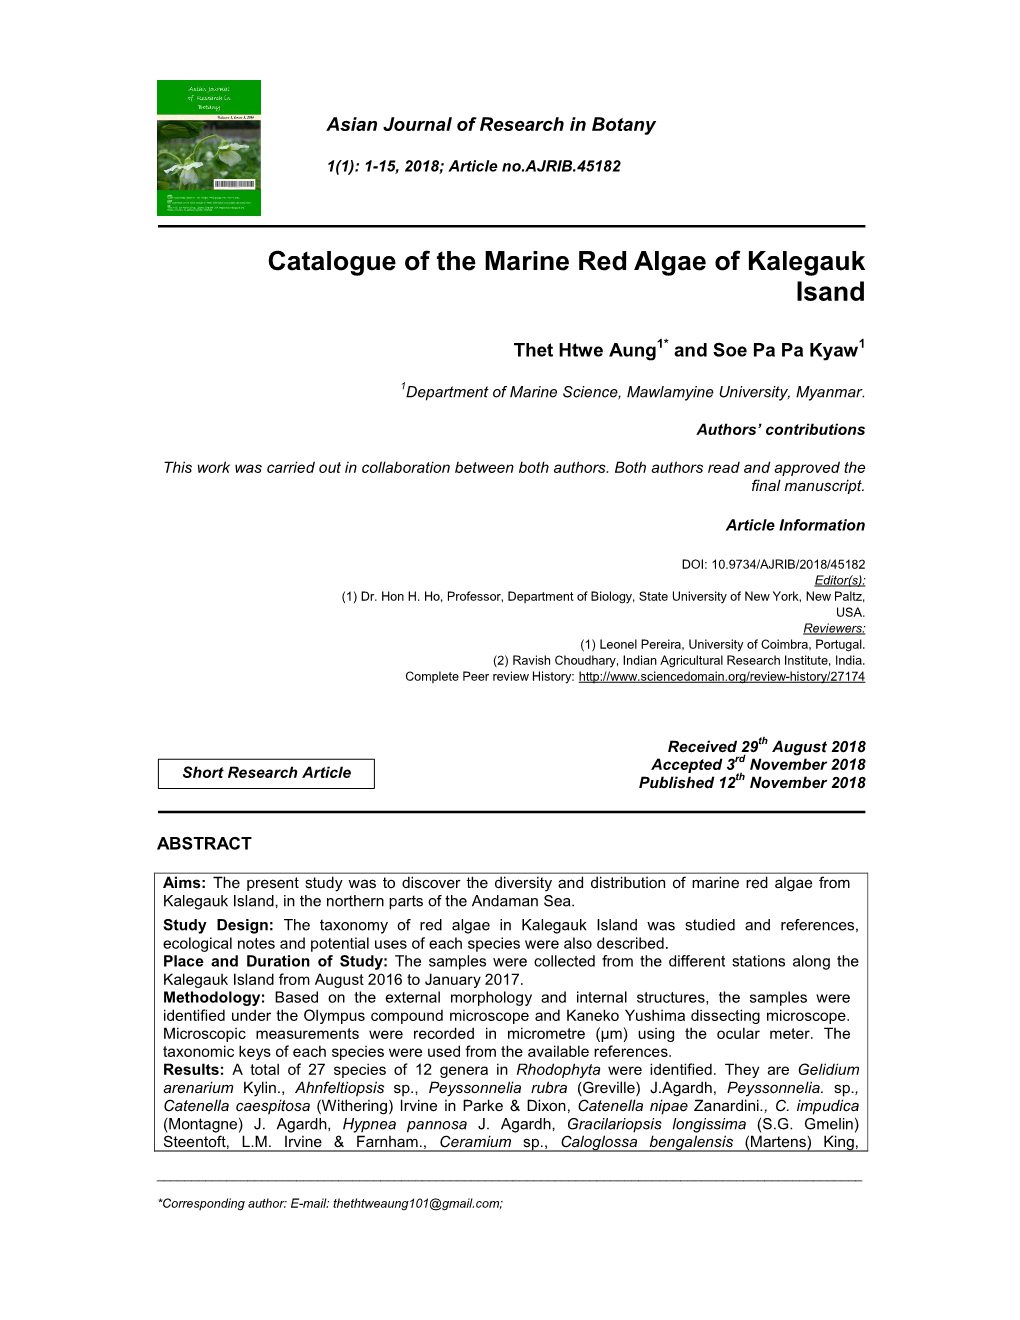 Catalogue of the Marine Red Algae of Kalegauk Isand